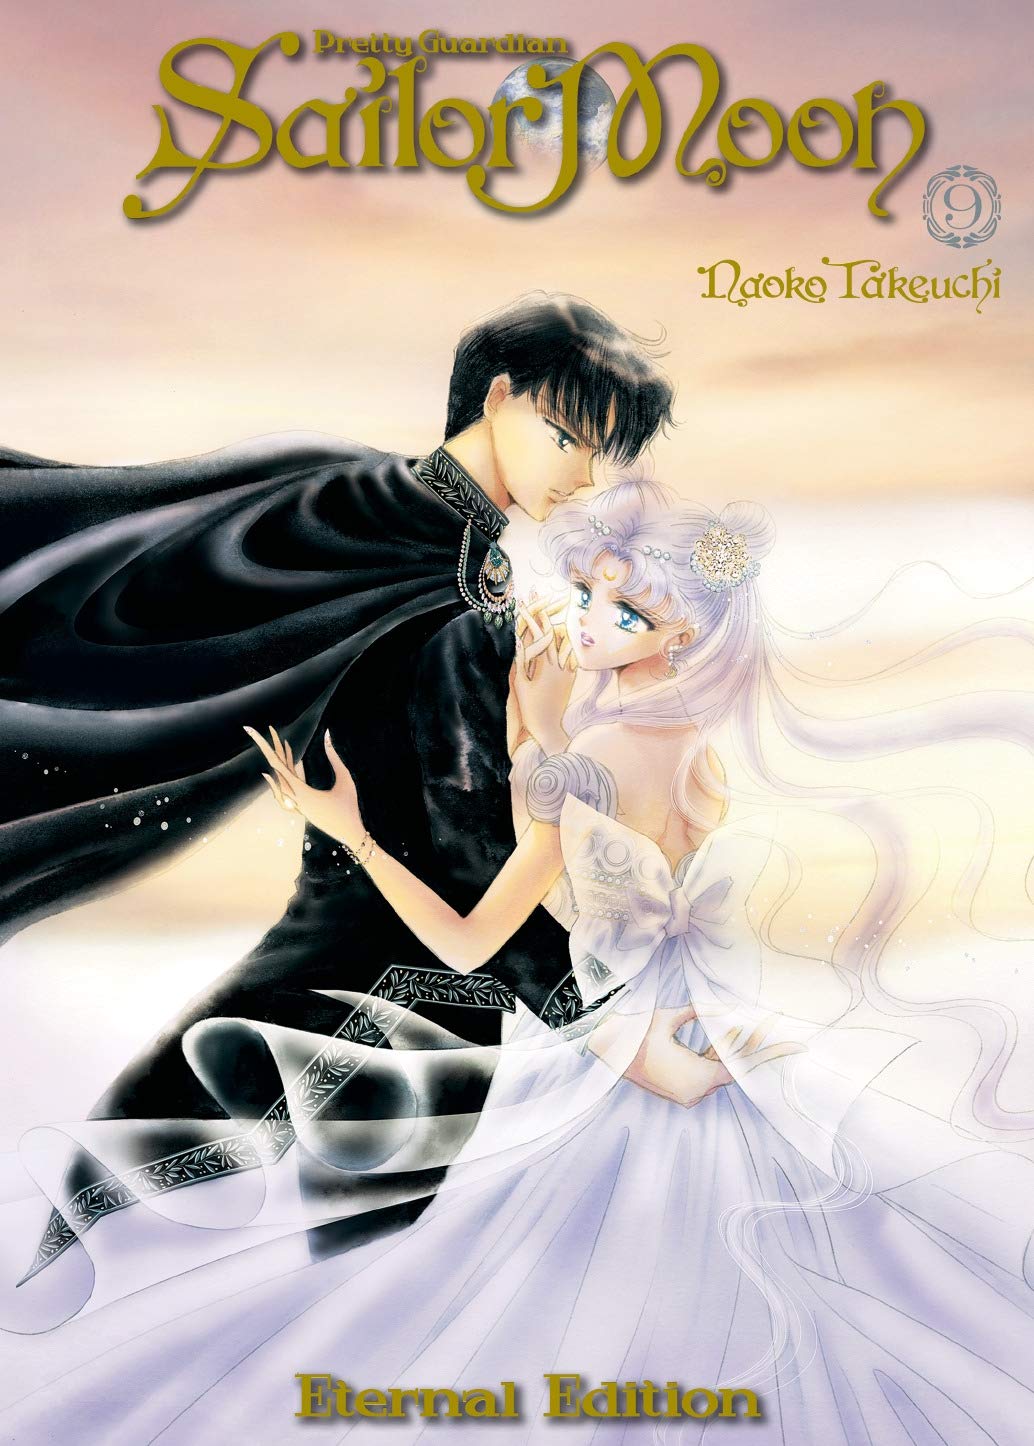 美少女战士 9 完全版 平装漫画 英文原版 Sailor Moon Eternal Edition 9 武内直子 Naoko Takeuchi 中图